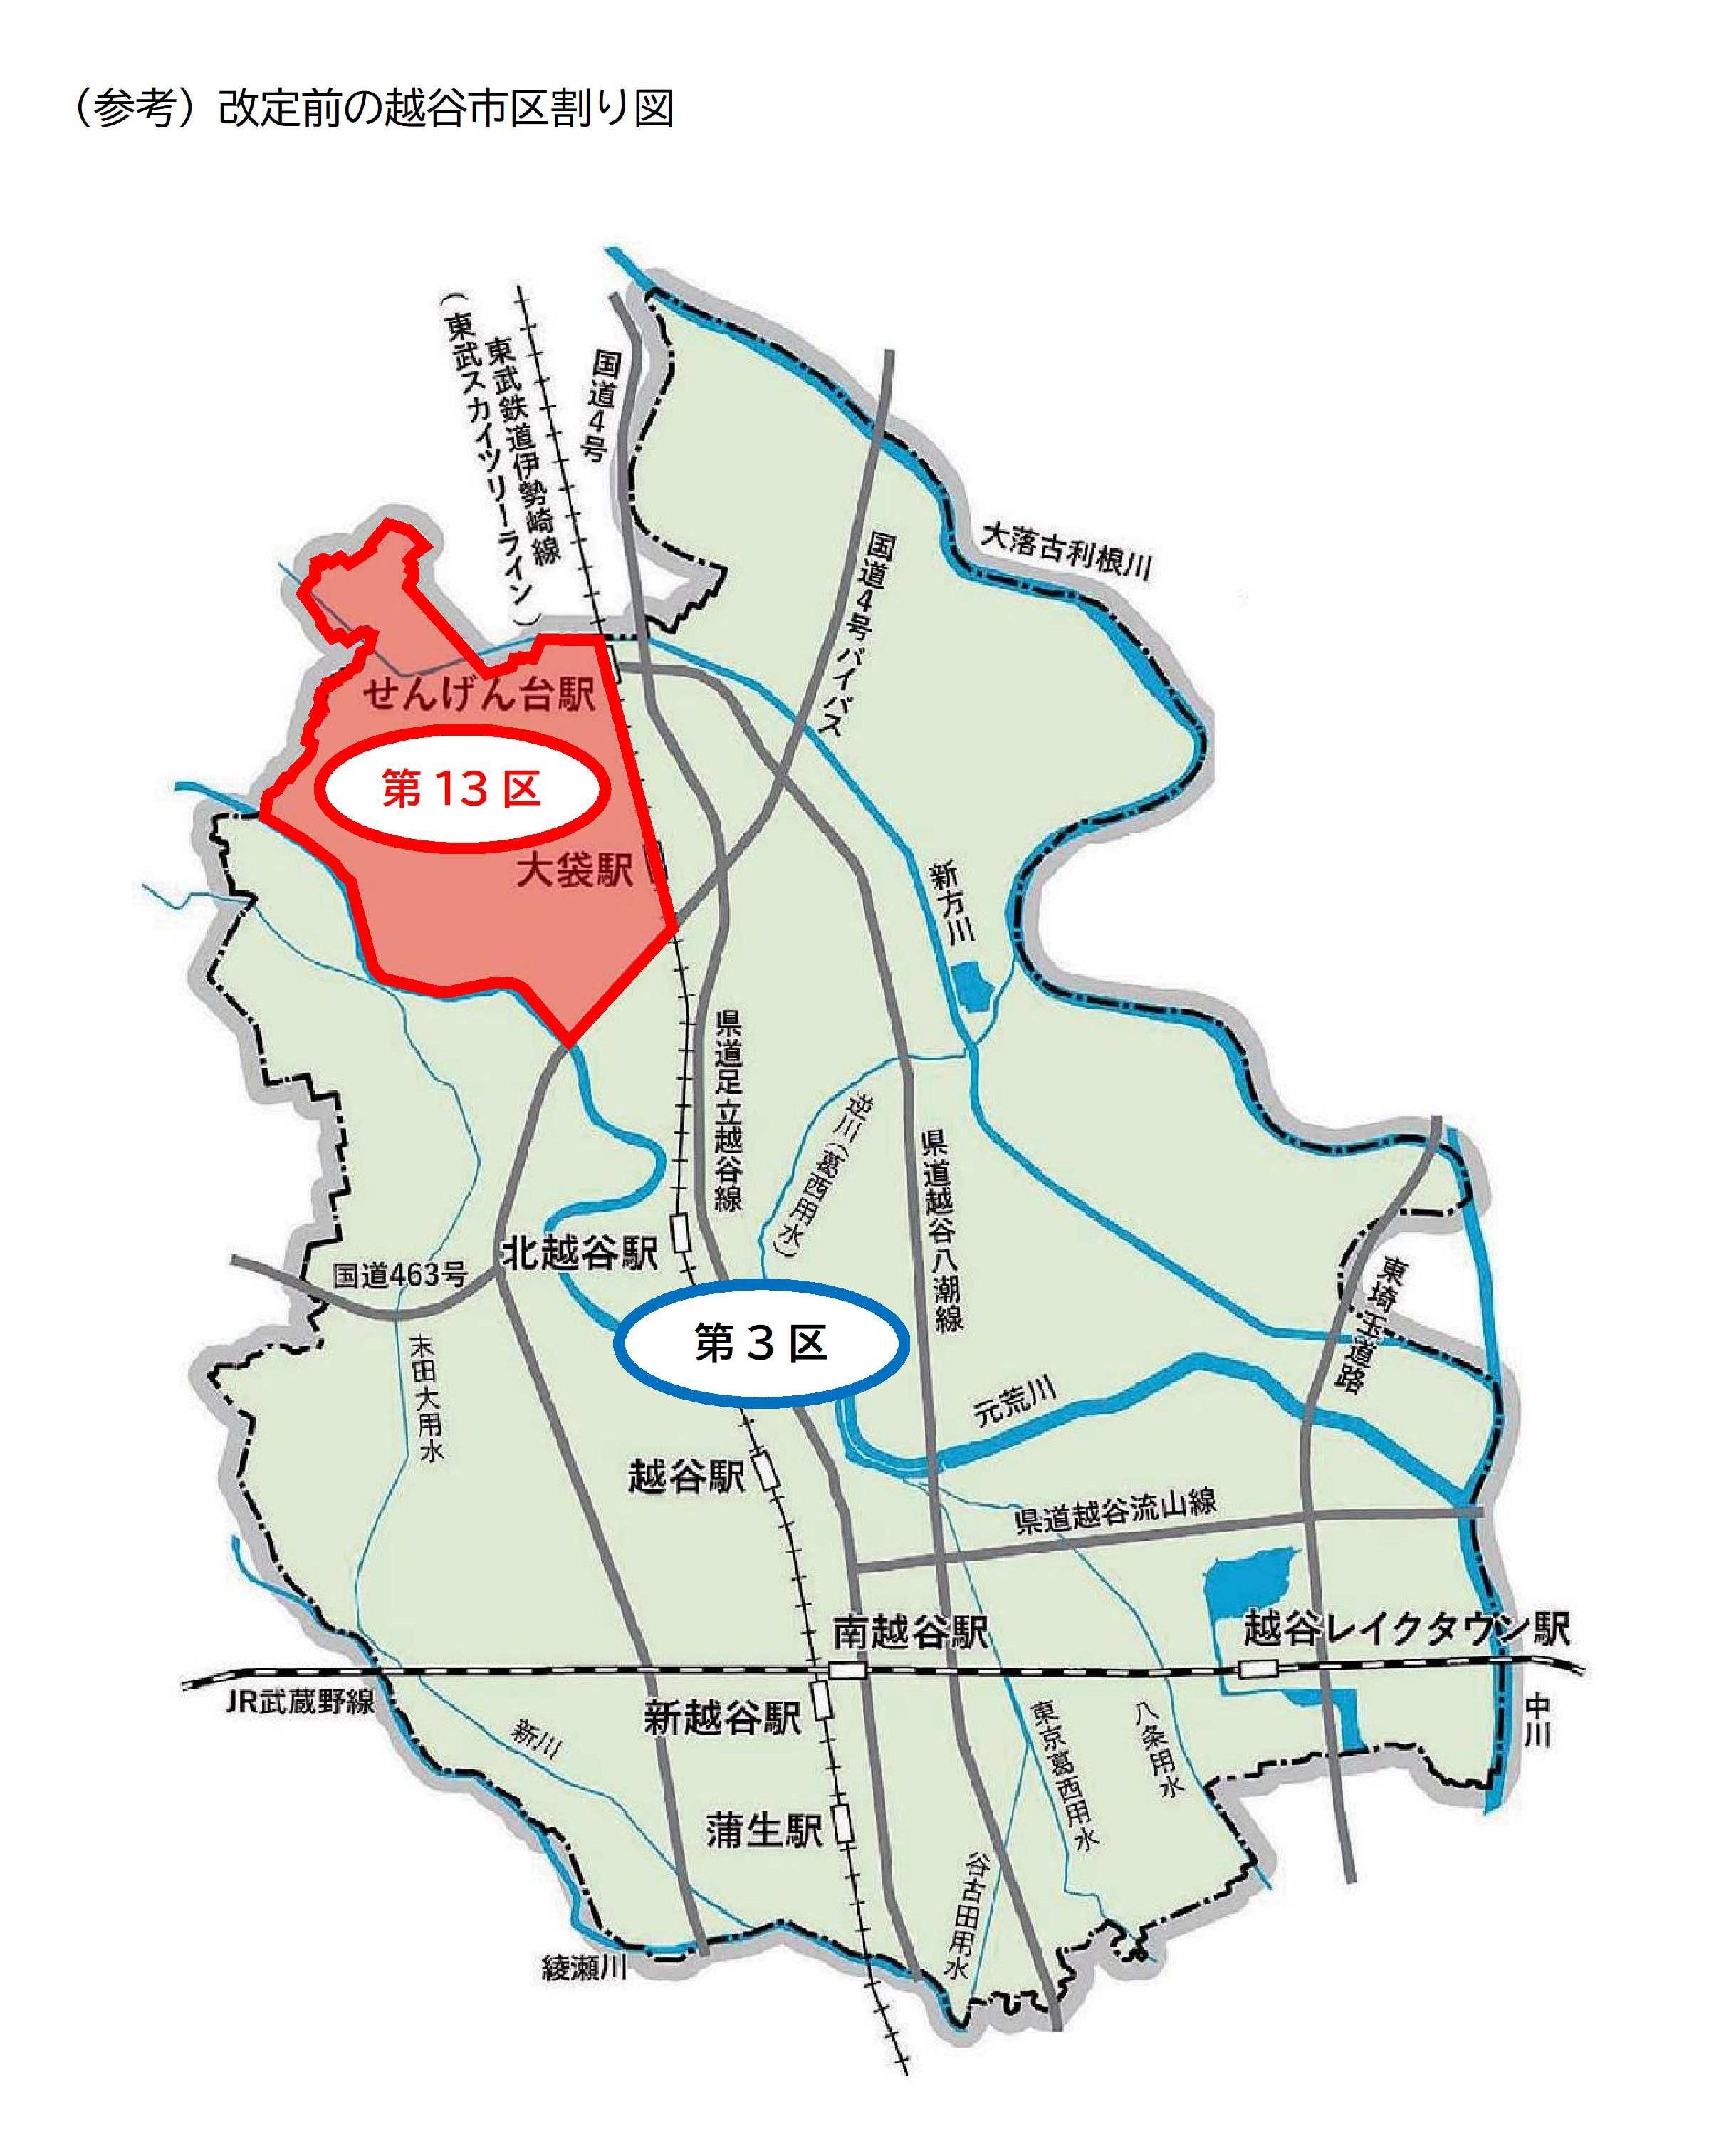 （参考）改定前の越谷市区割り図